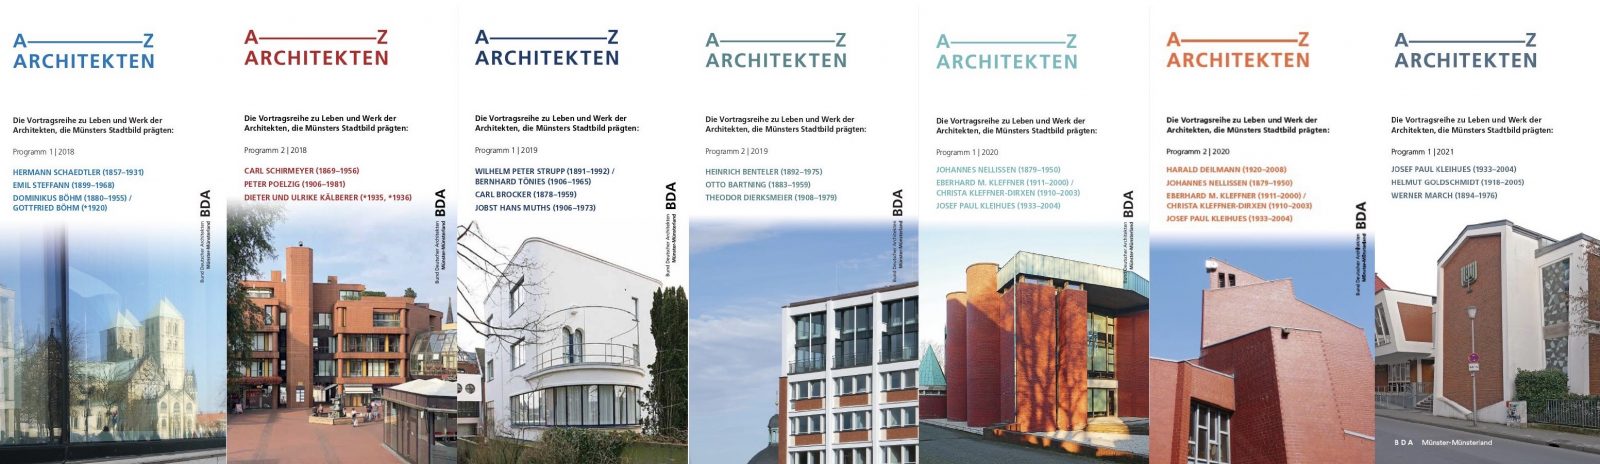 A-Z Architekten - Veranstaltungsreihe des BDA Münster-Münsterland seit 2016